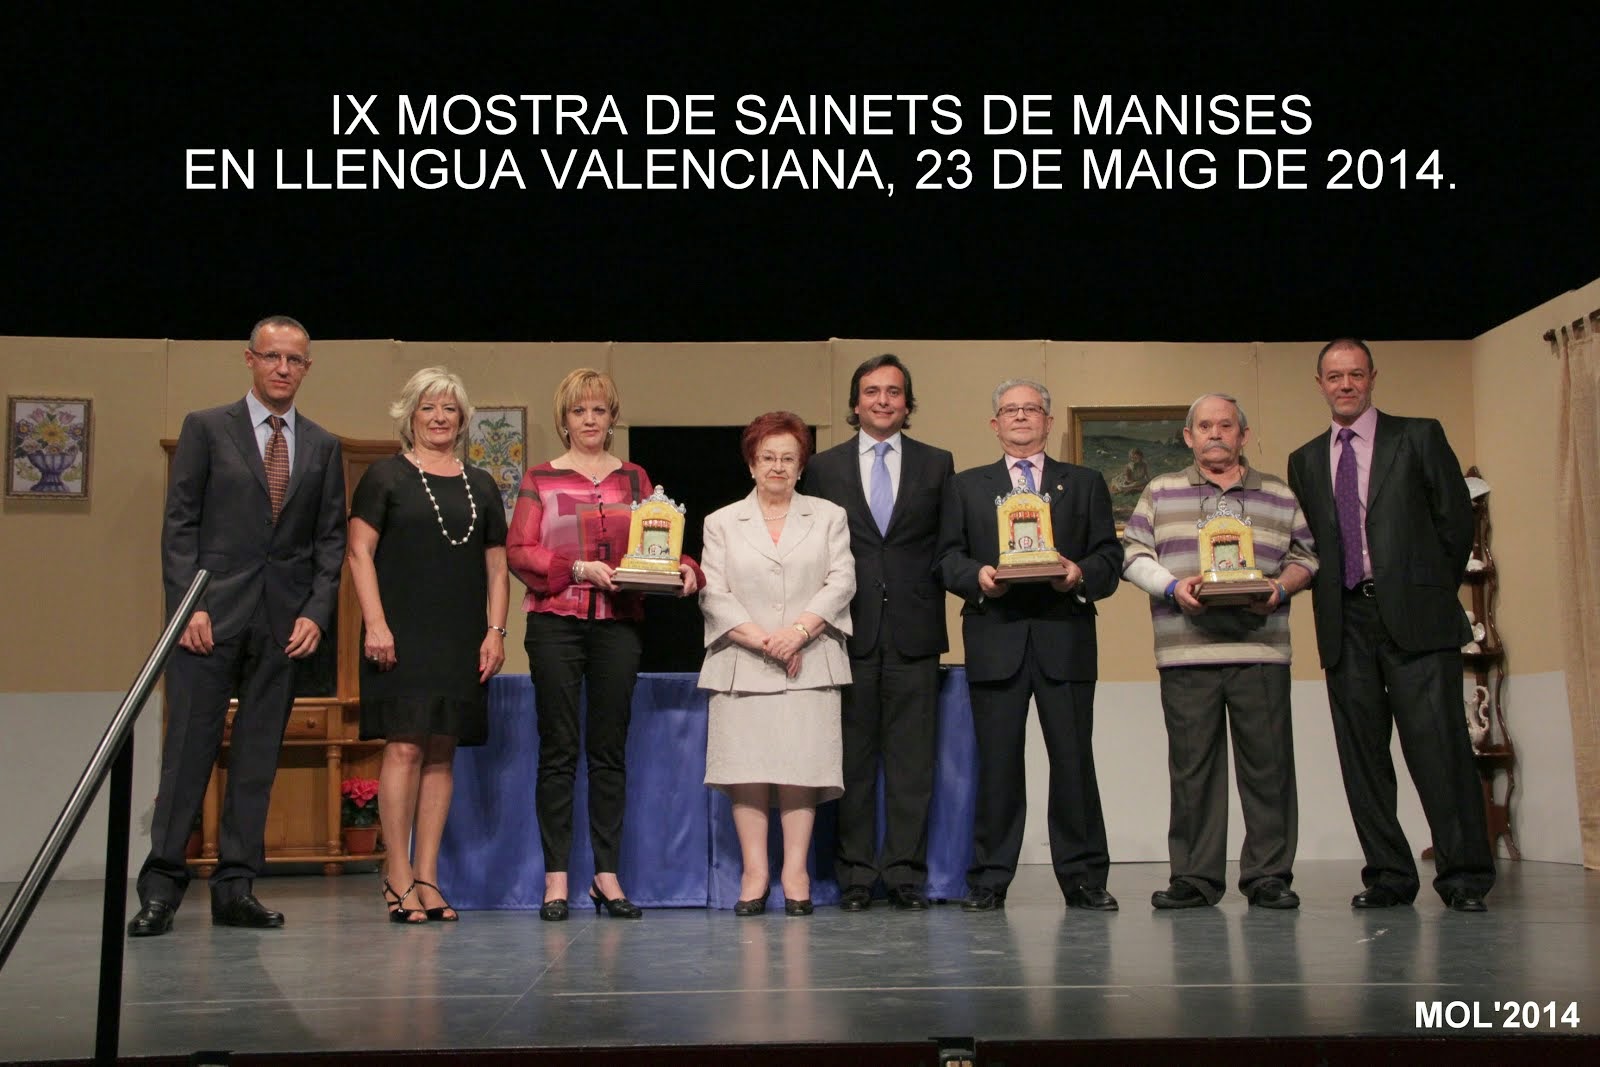 23.05.14 MOSTRA DE SAINETS EN LLENGUA VALENCIANA, MANISES MAIG DE 2014